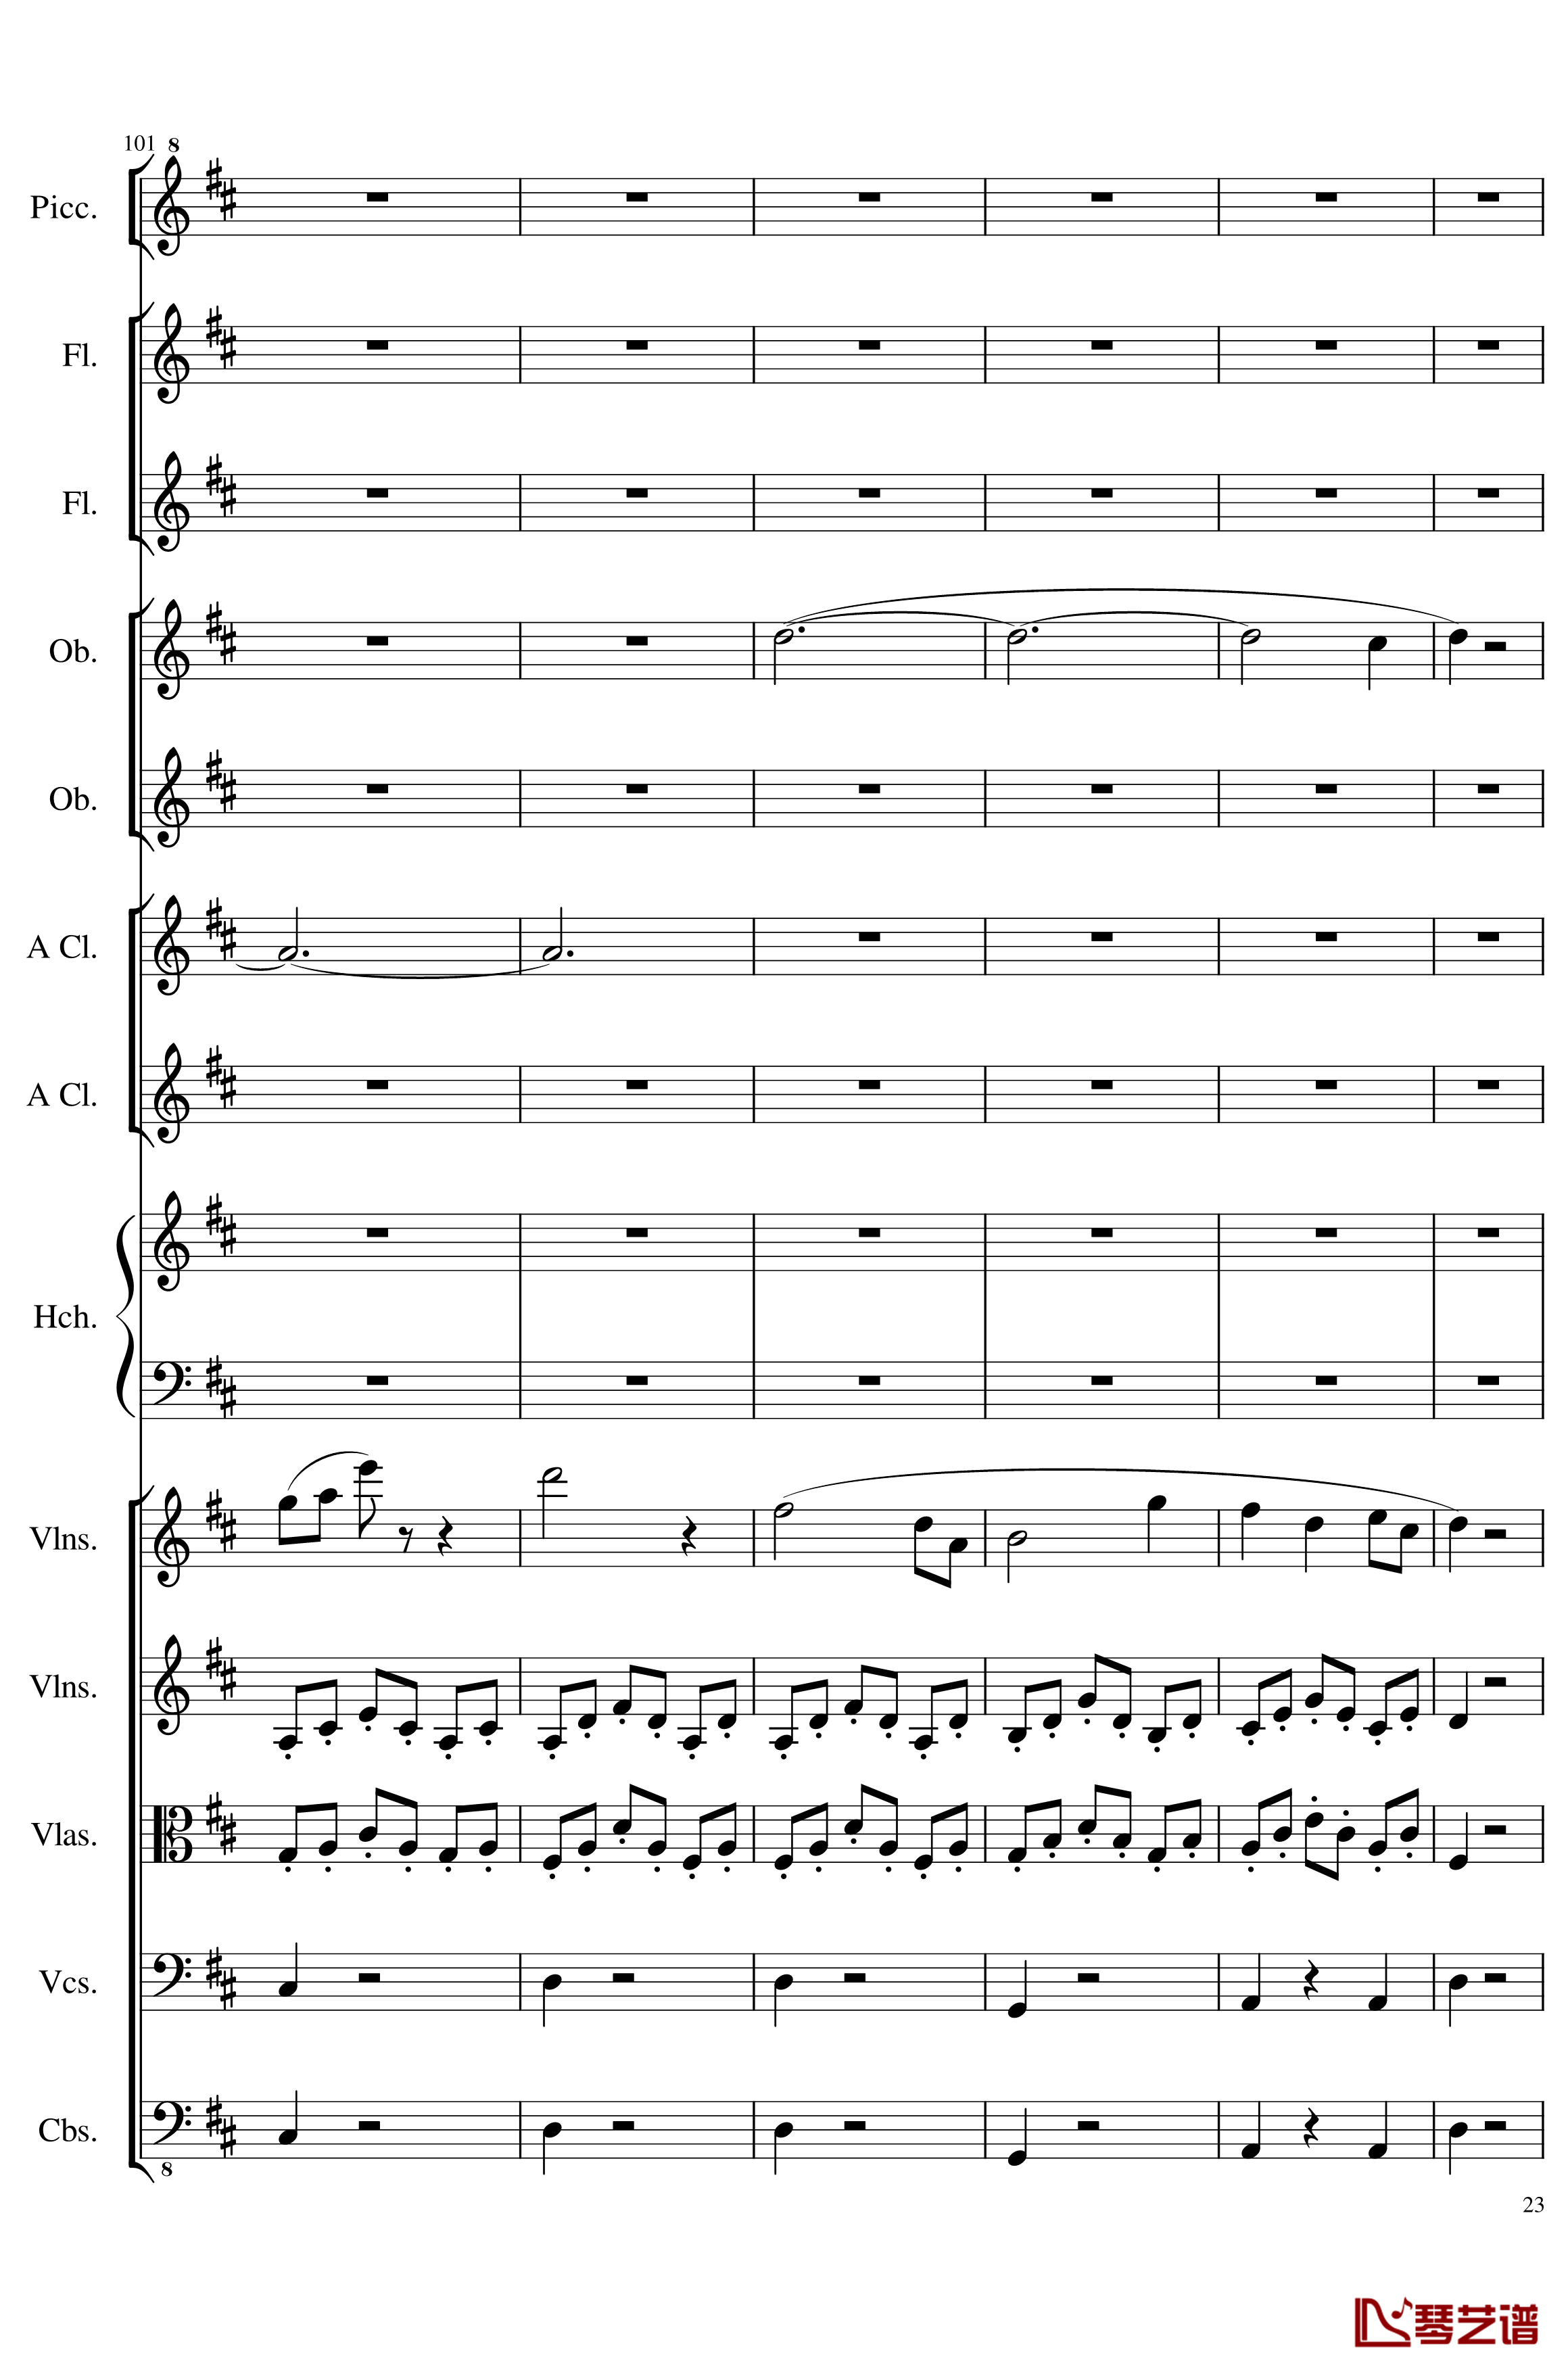 7 Contredanses No.1-7, Op.124钢琴谱-7首乡村舞曲，第一至第七，作品124-一个球23